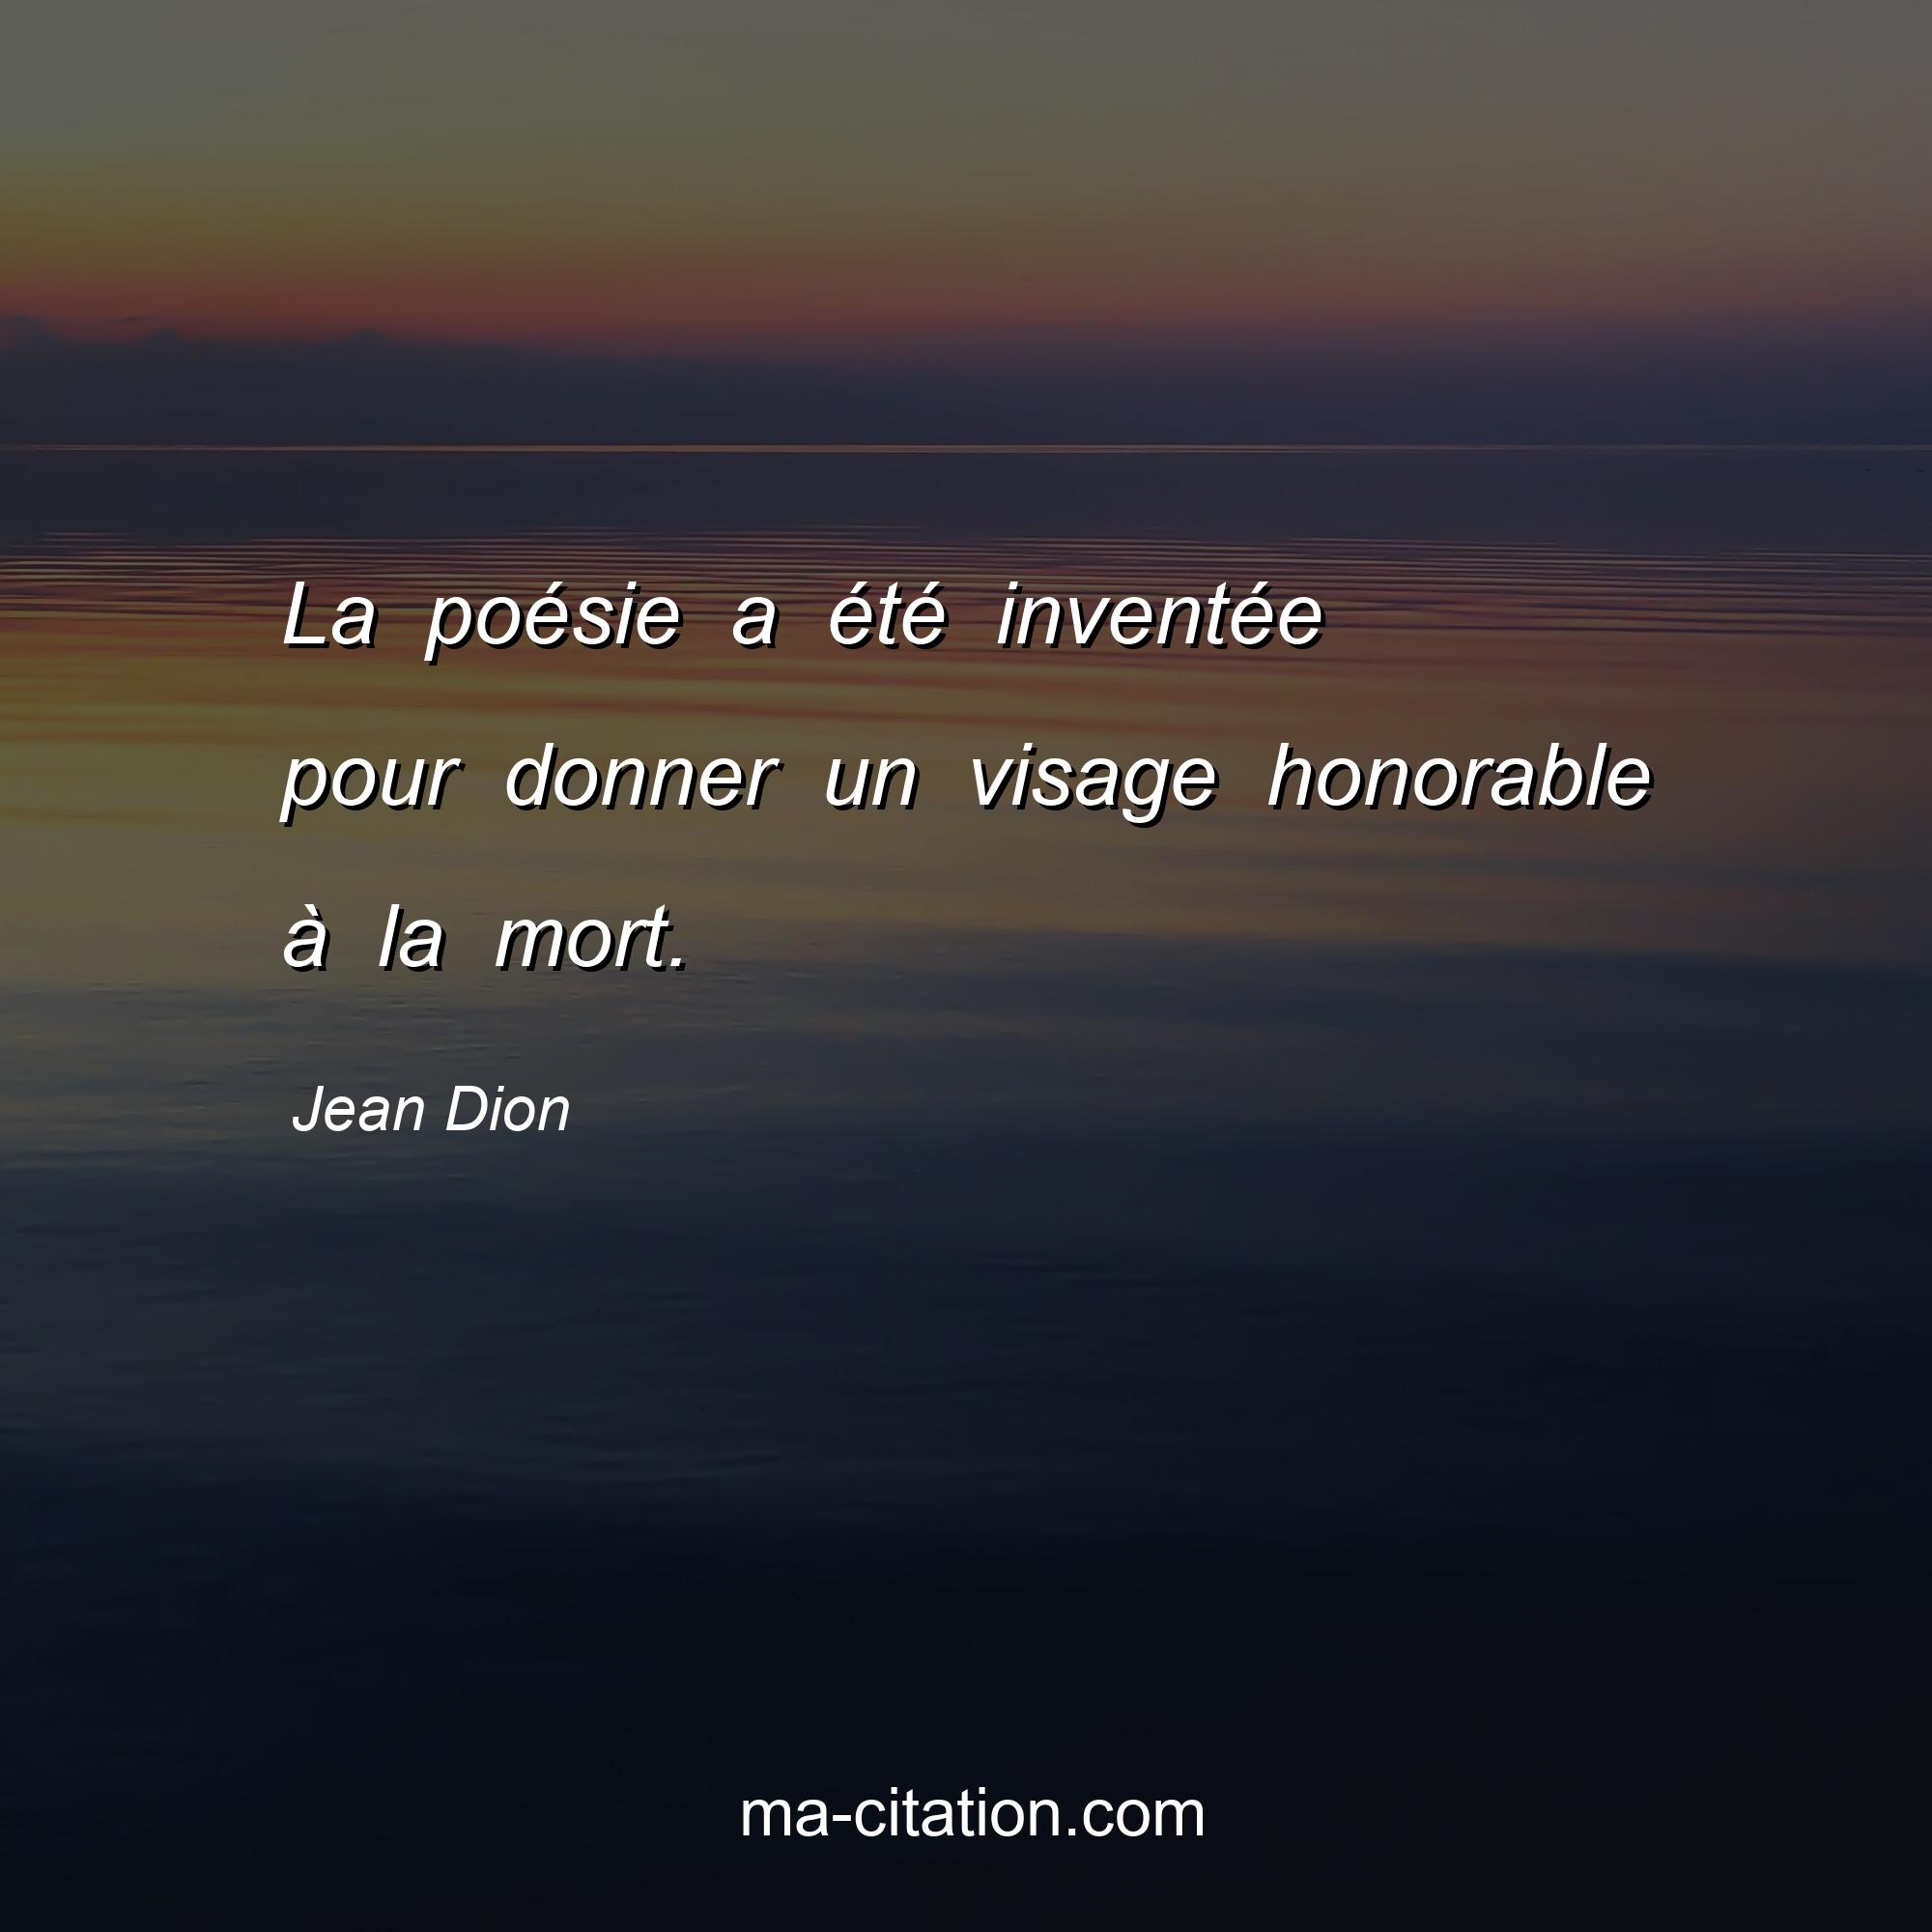 Jean Dion : La poésie a été inventée pour donner un visage honorable à la mort.